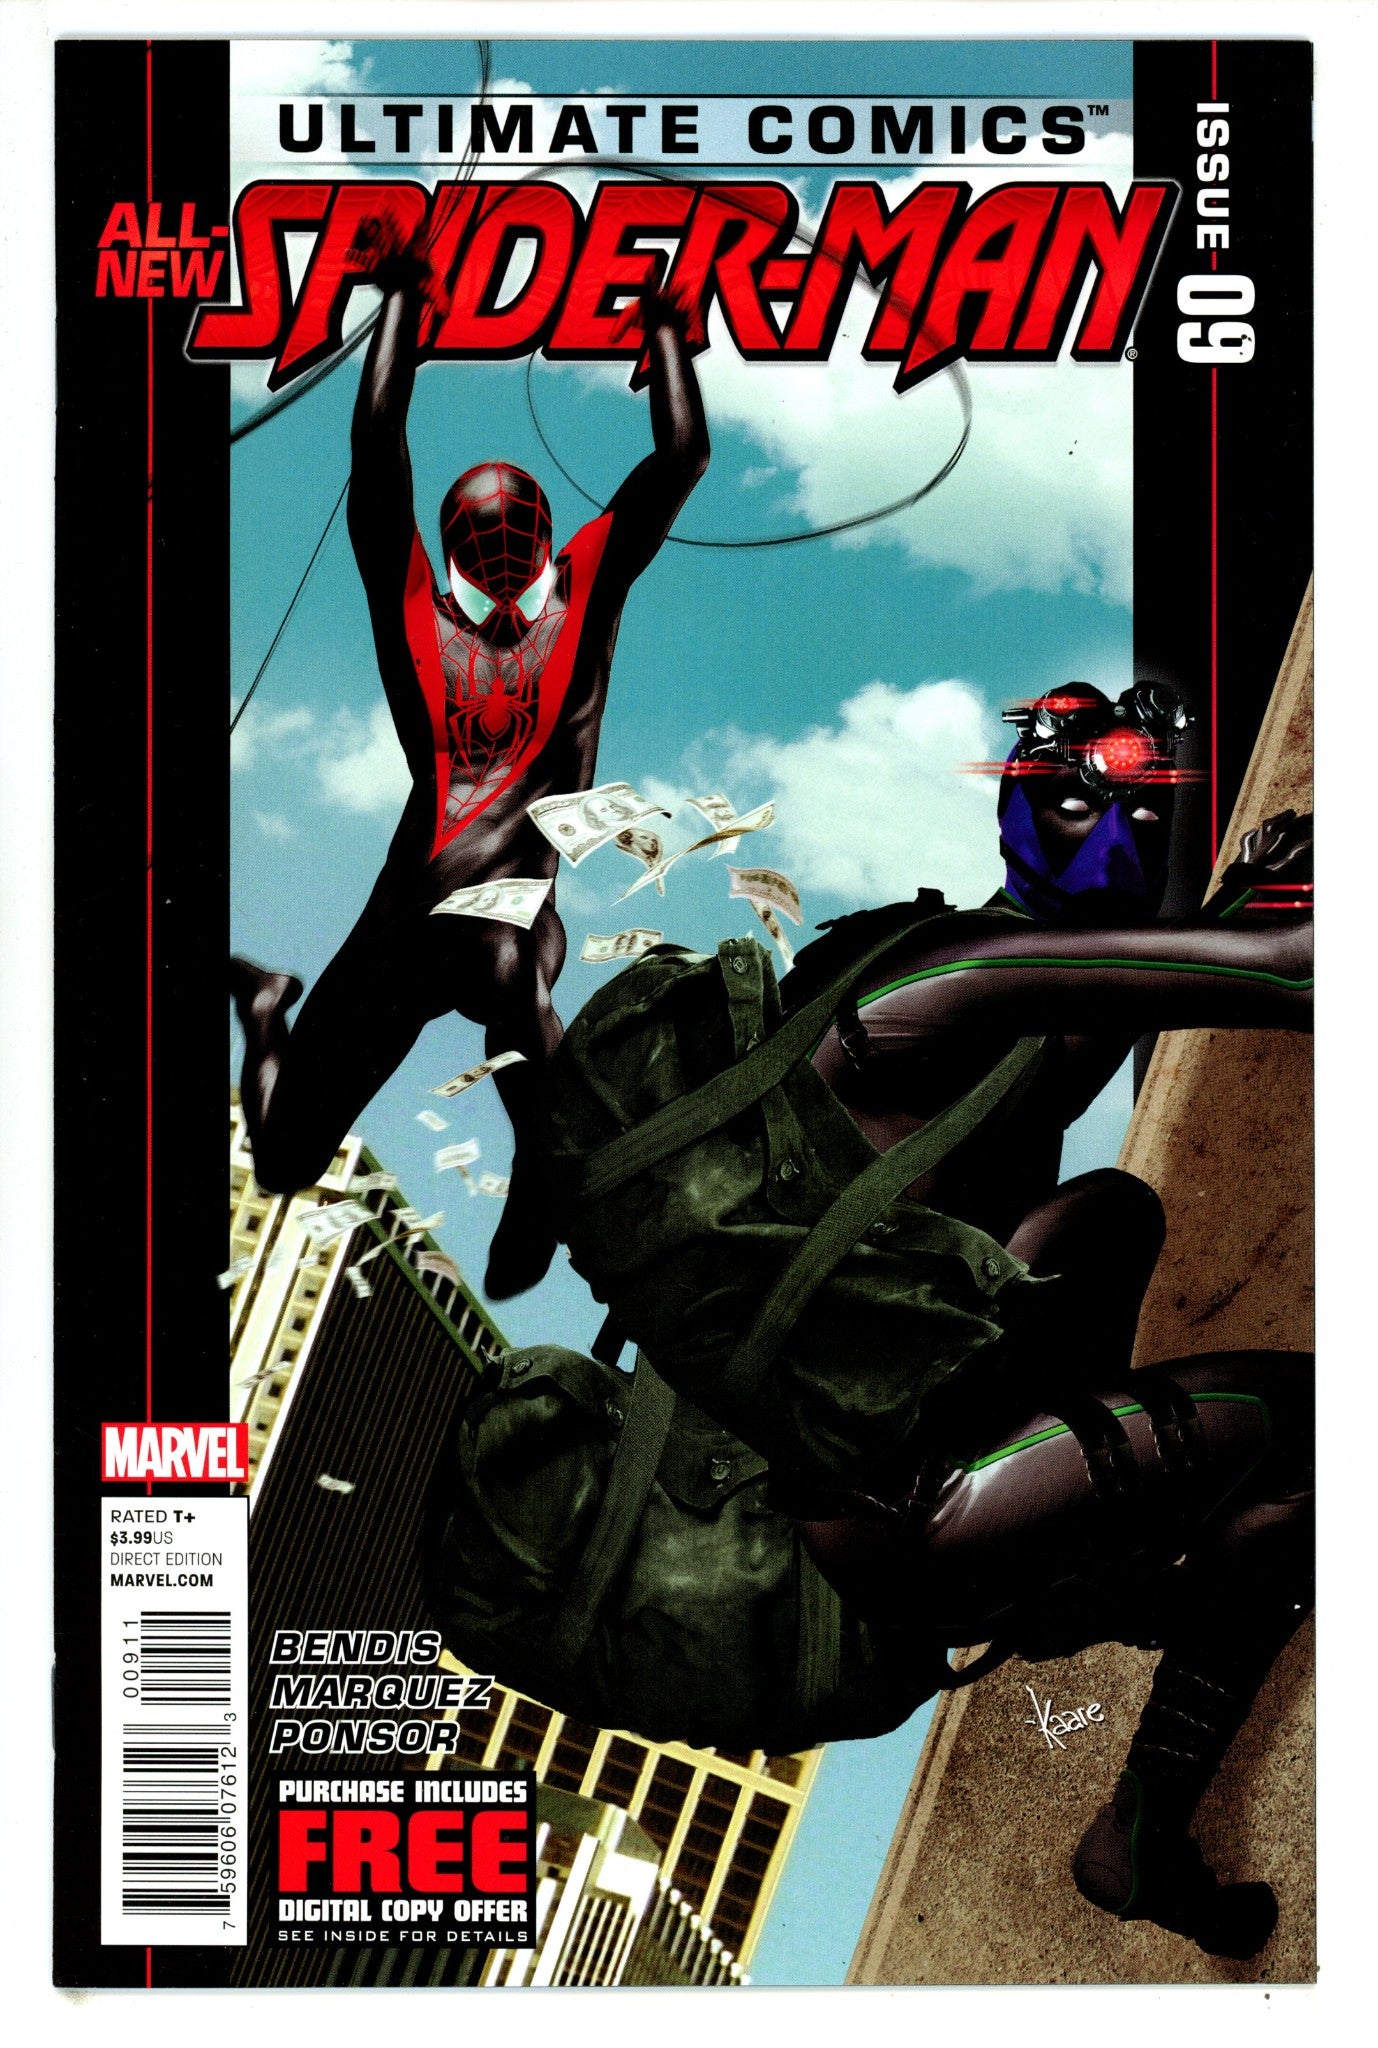 Ultimate Comics Spider-Man Vol 2 9 NM (9.4) (2012) 